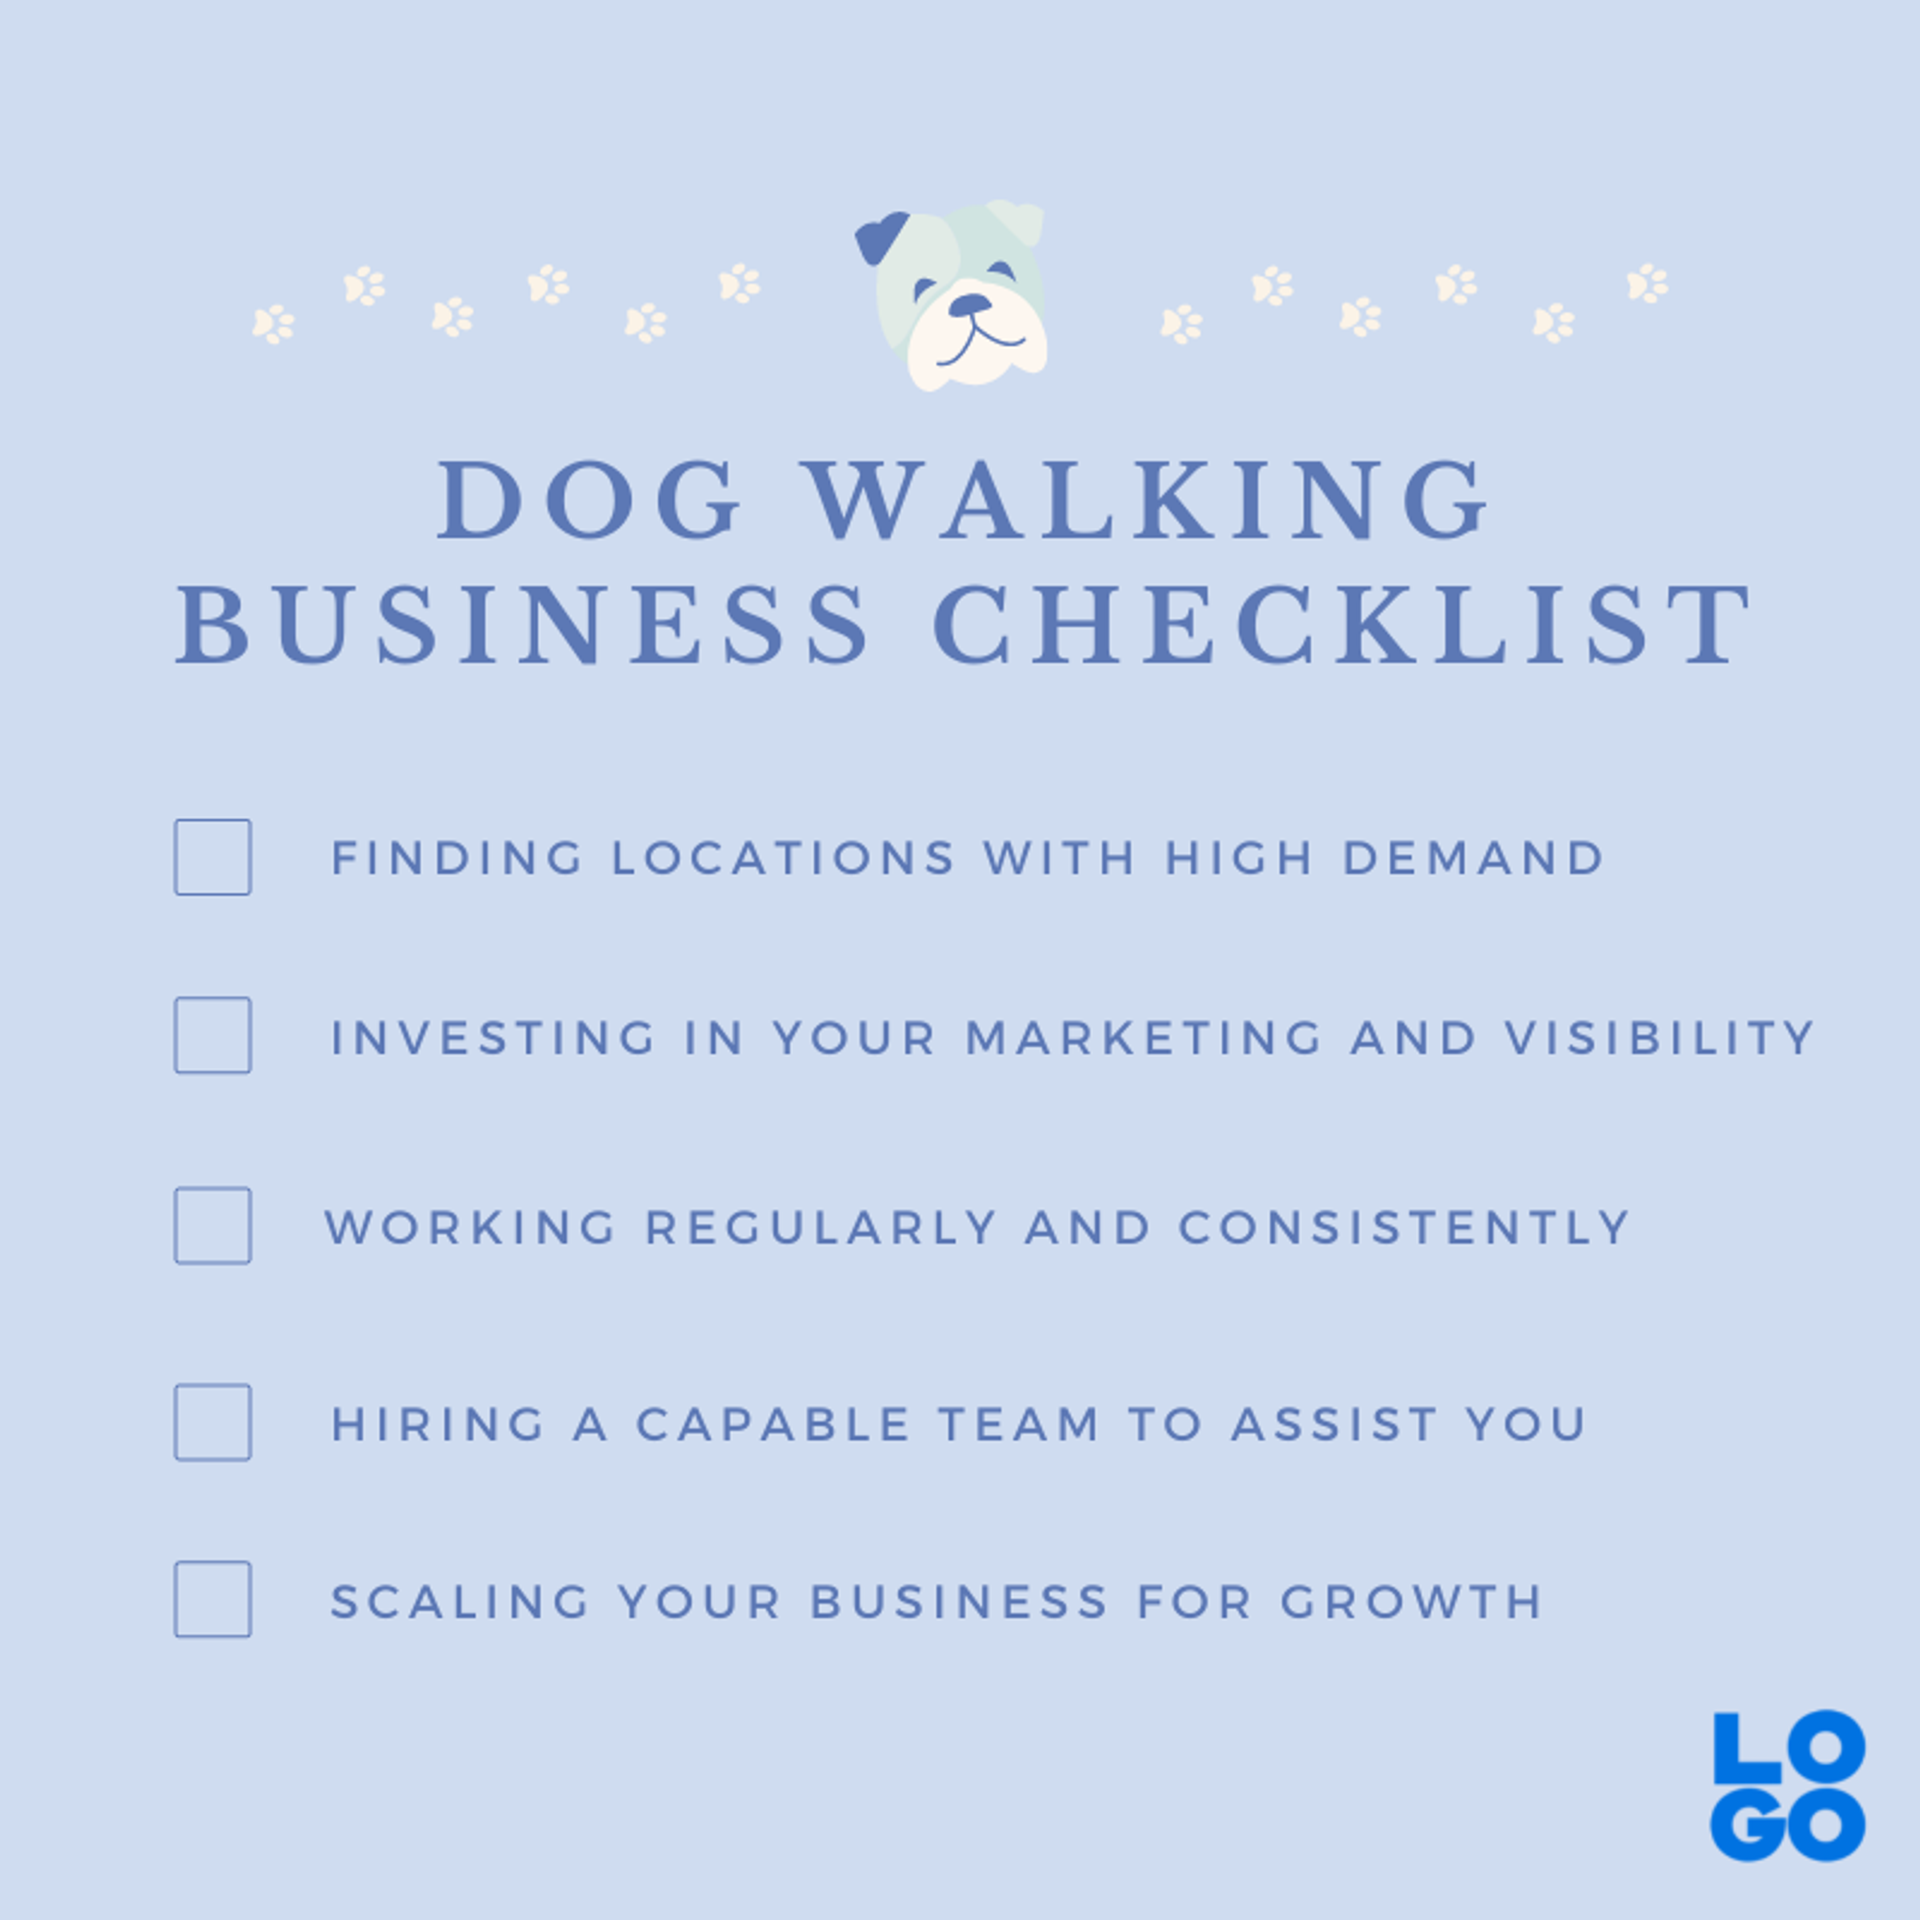 Dog walking business checklist